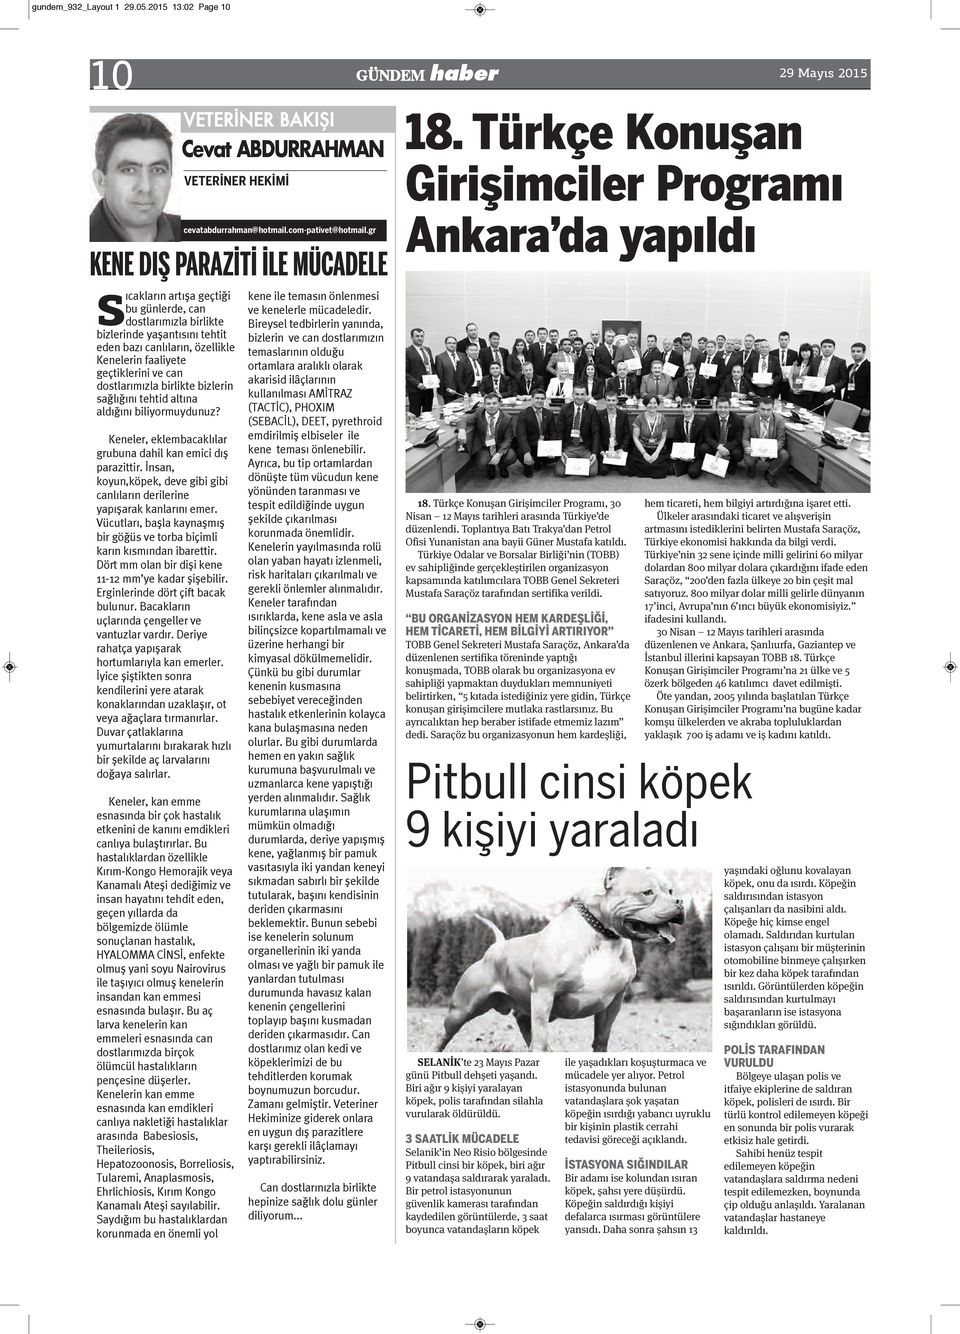 Türkçe Konuşan Girişimciler Programı Ankara da yapıldı S ıcakların artışa geçtiği bu günlerde, can dostlarımızla birlikte bizlerinde yaşantısını tehtit eden bazı canlıların, özellikle Kenelerin